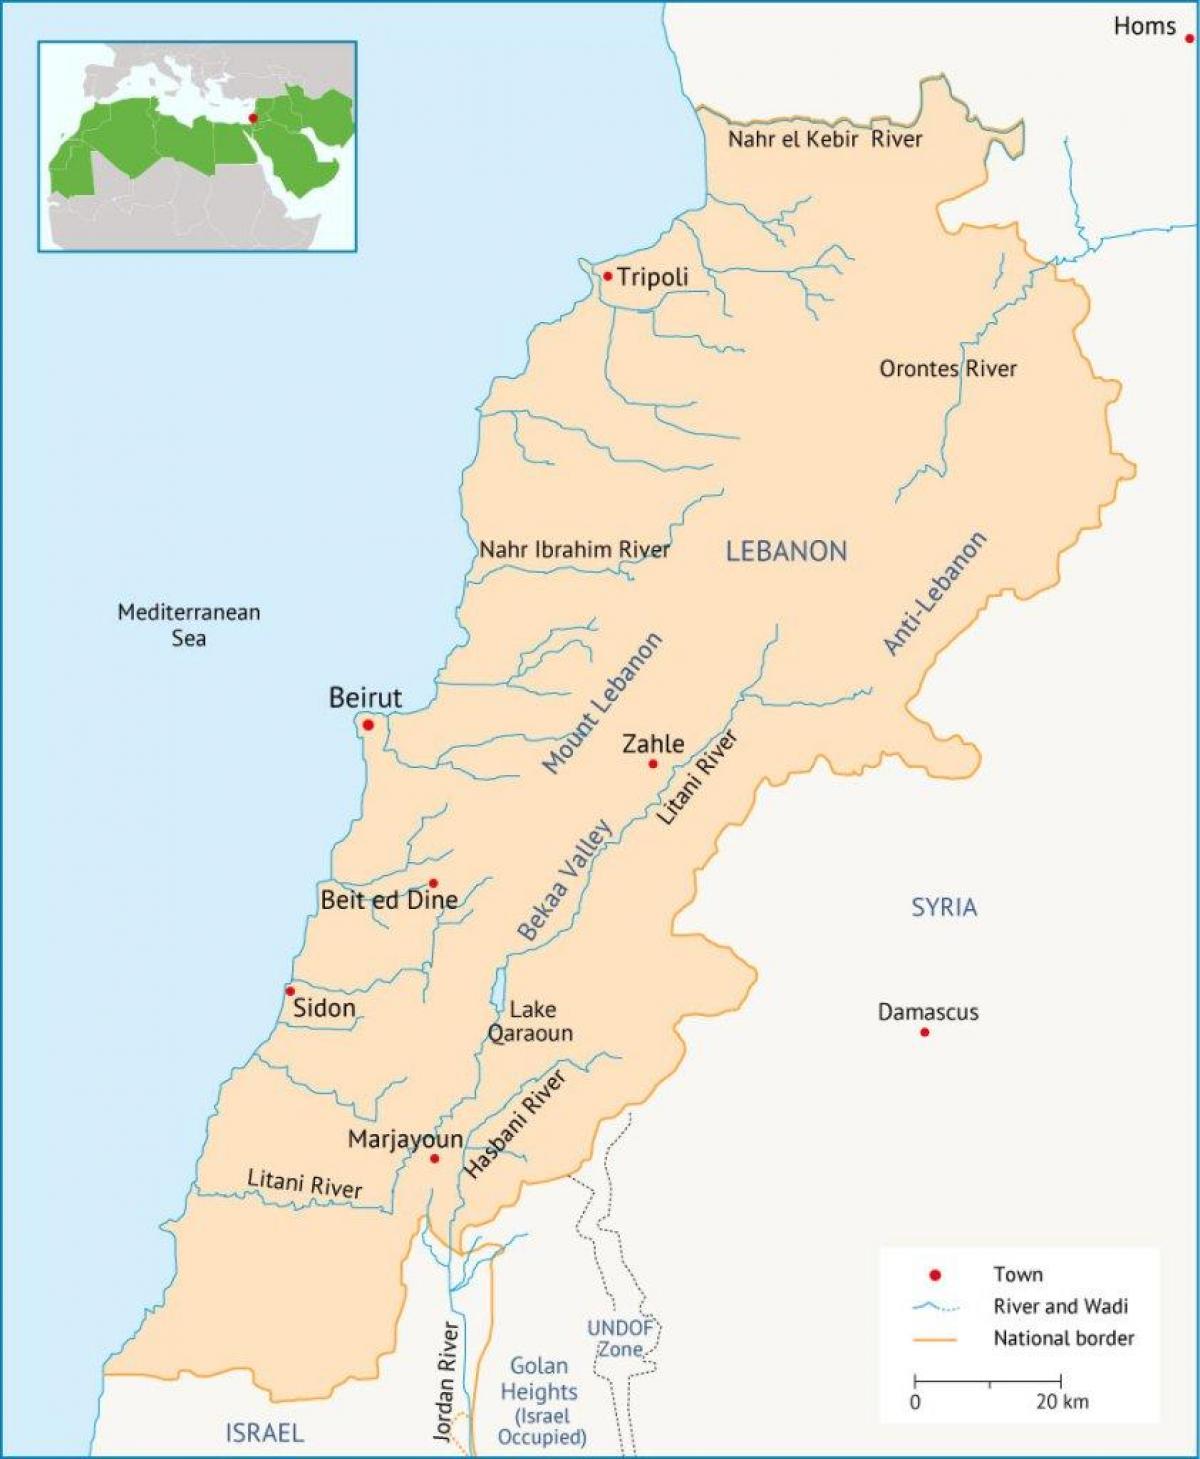 Liban hartë lumenjtë